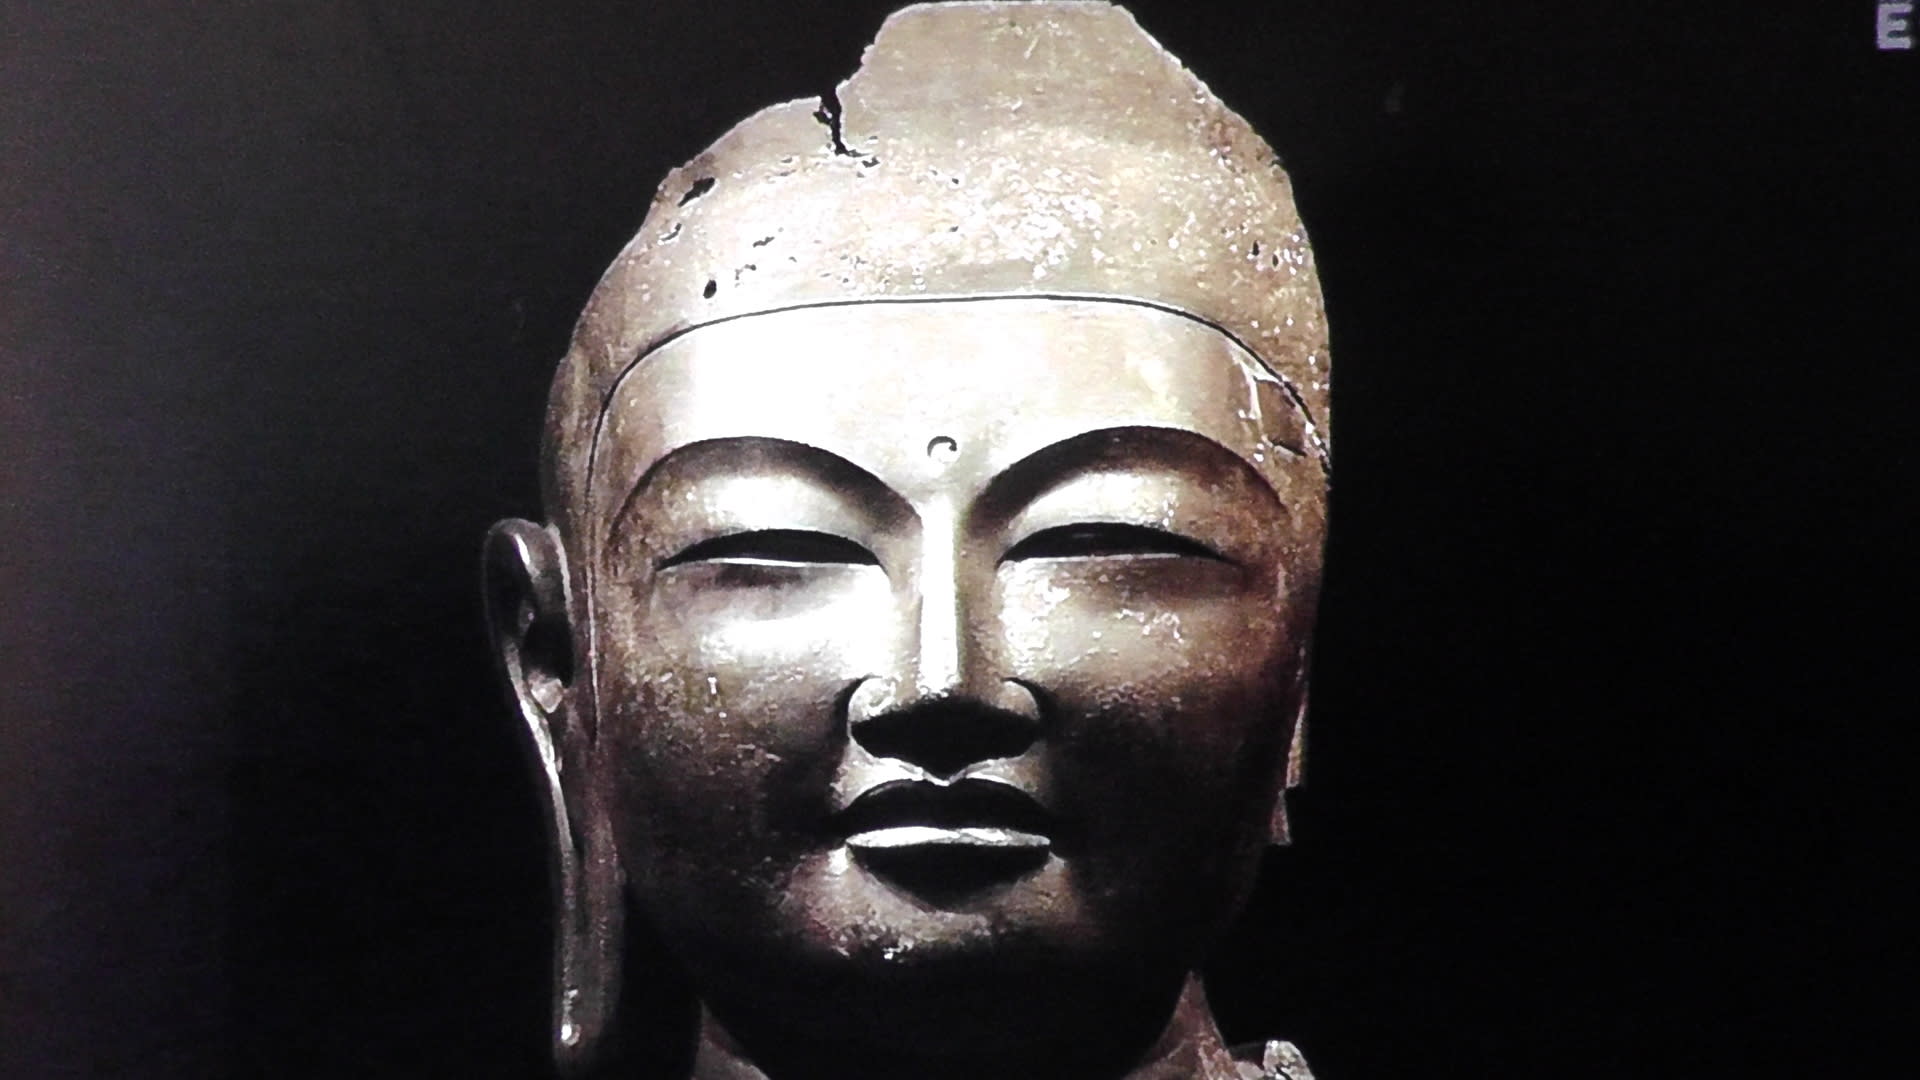 永遠に強く美しく奈良興福寺の国宝仏像 日曜美術館 京都で定年後生活